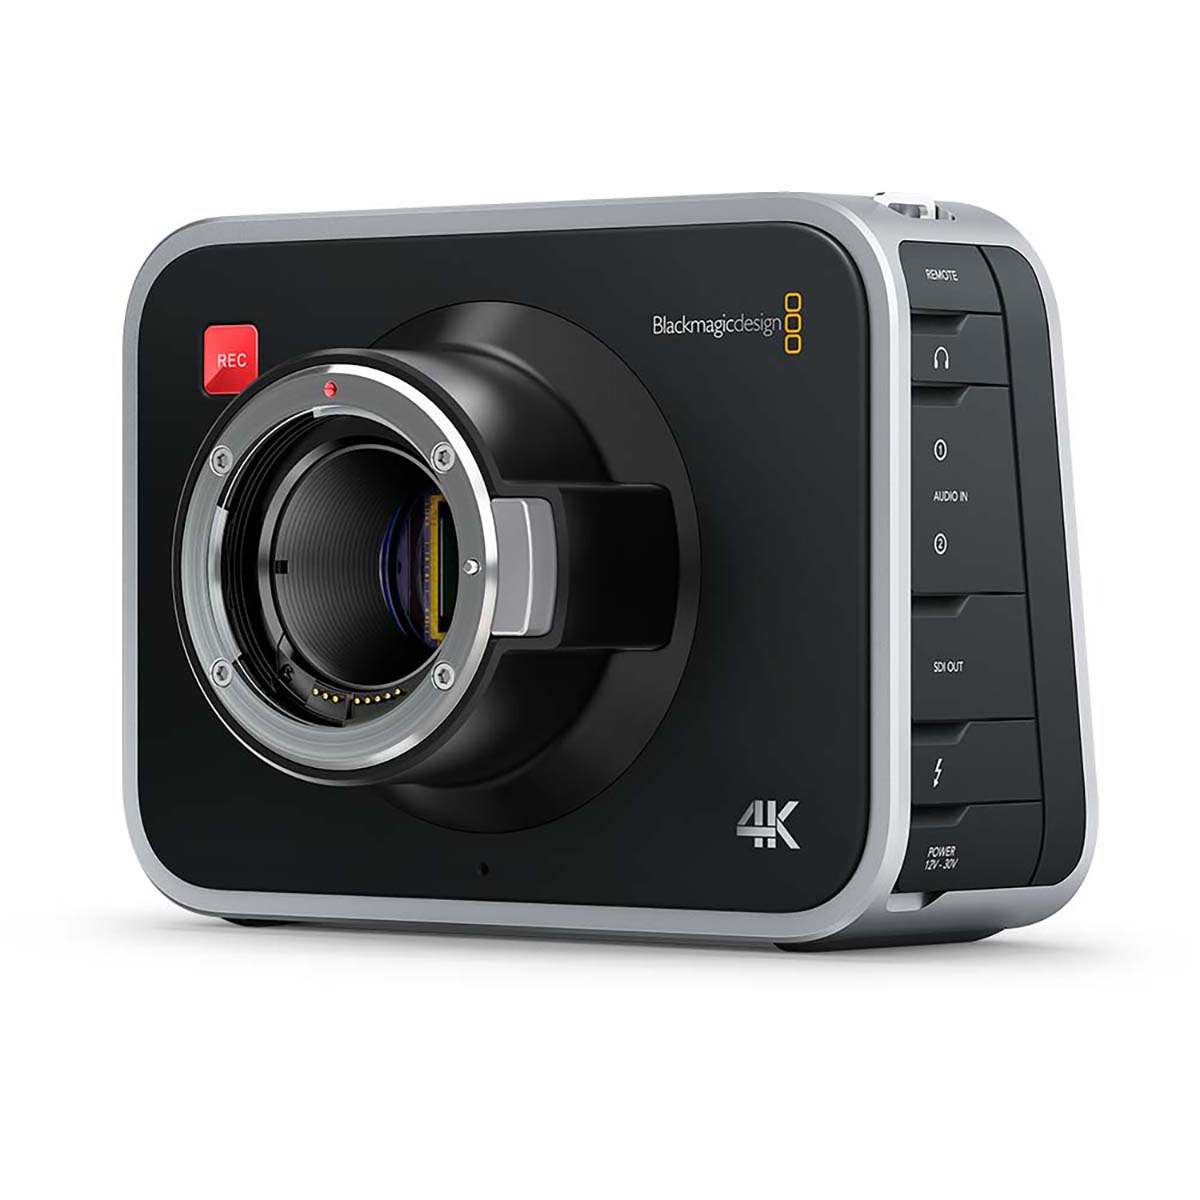 Immagine Videocamera Blackmagic Design Production Camera 4K